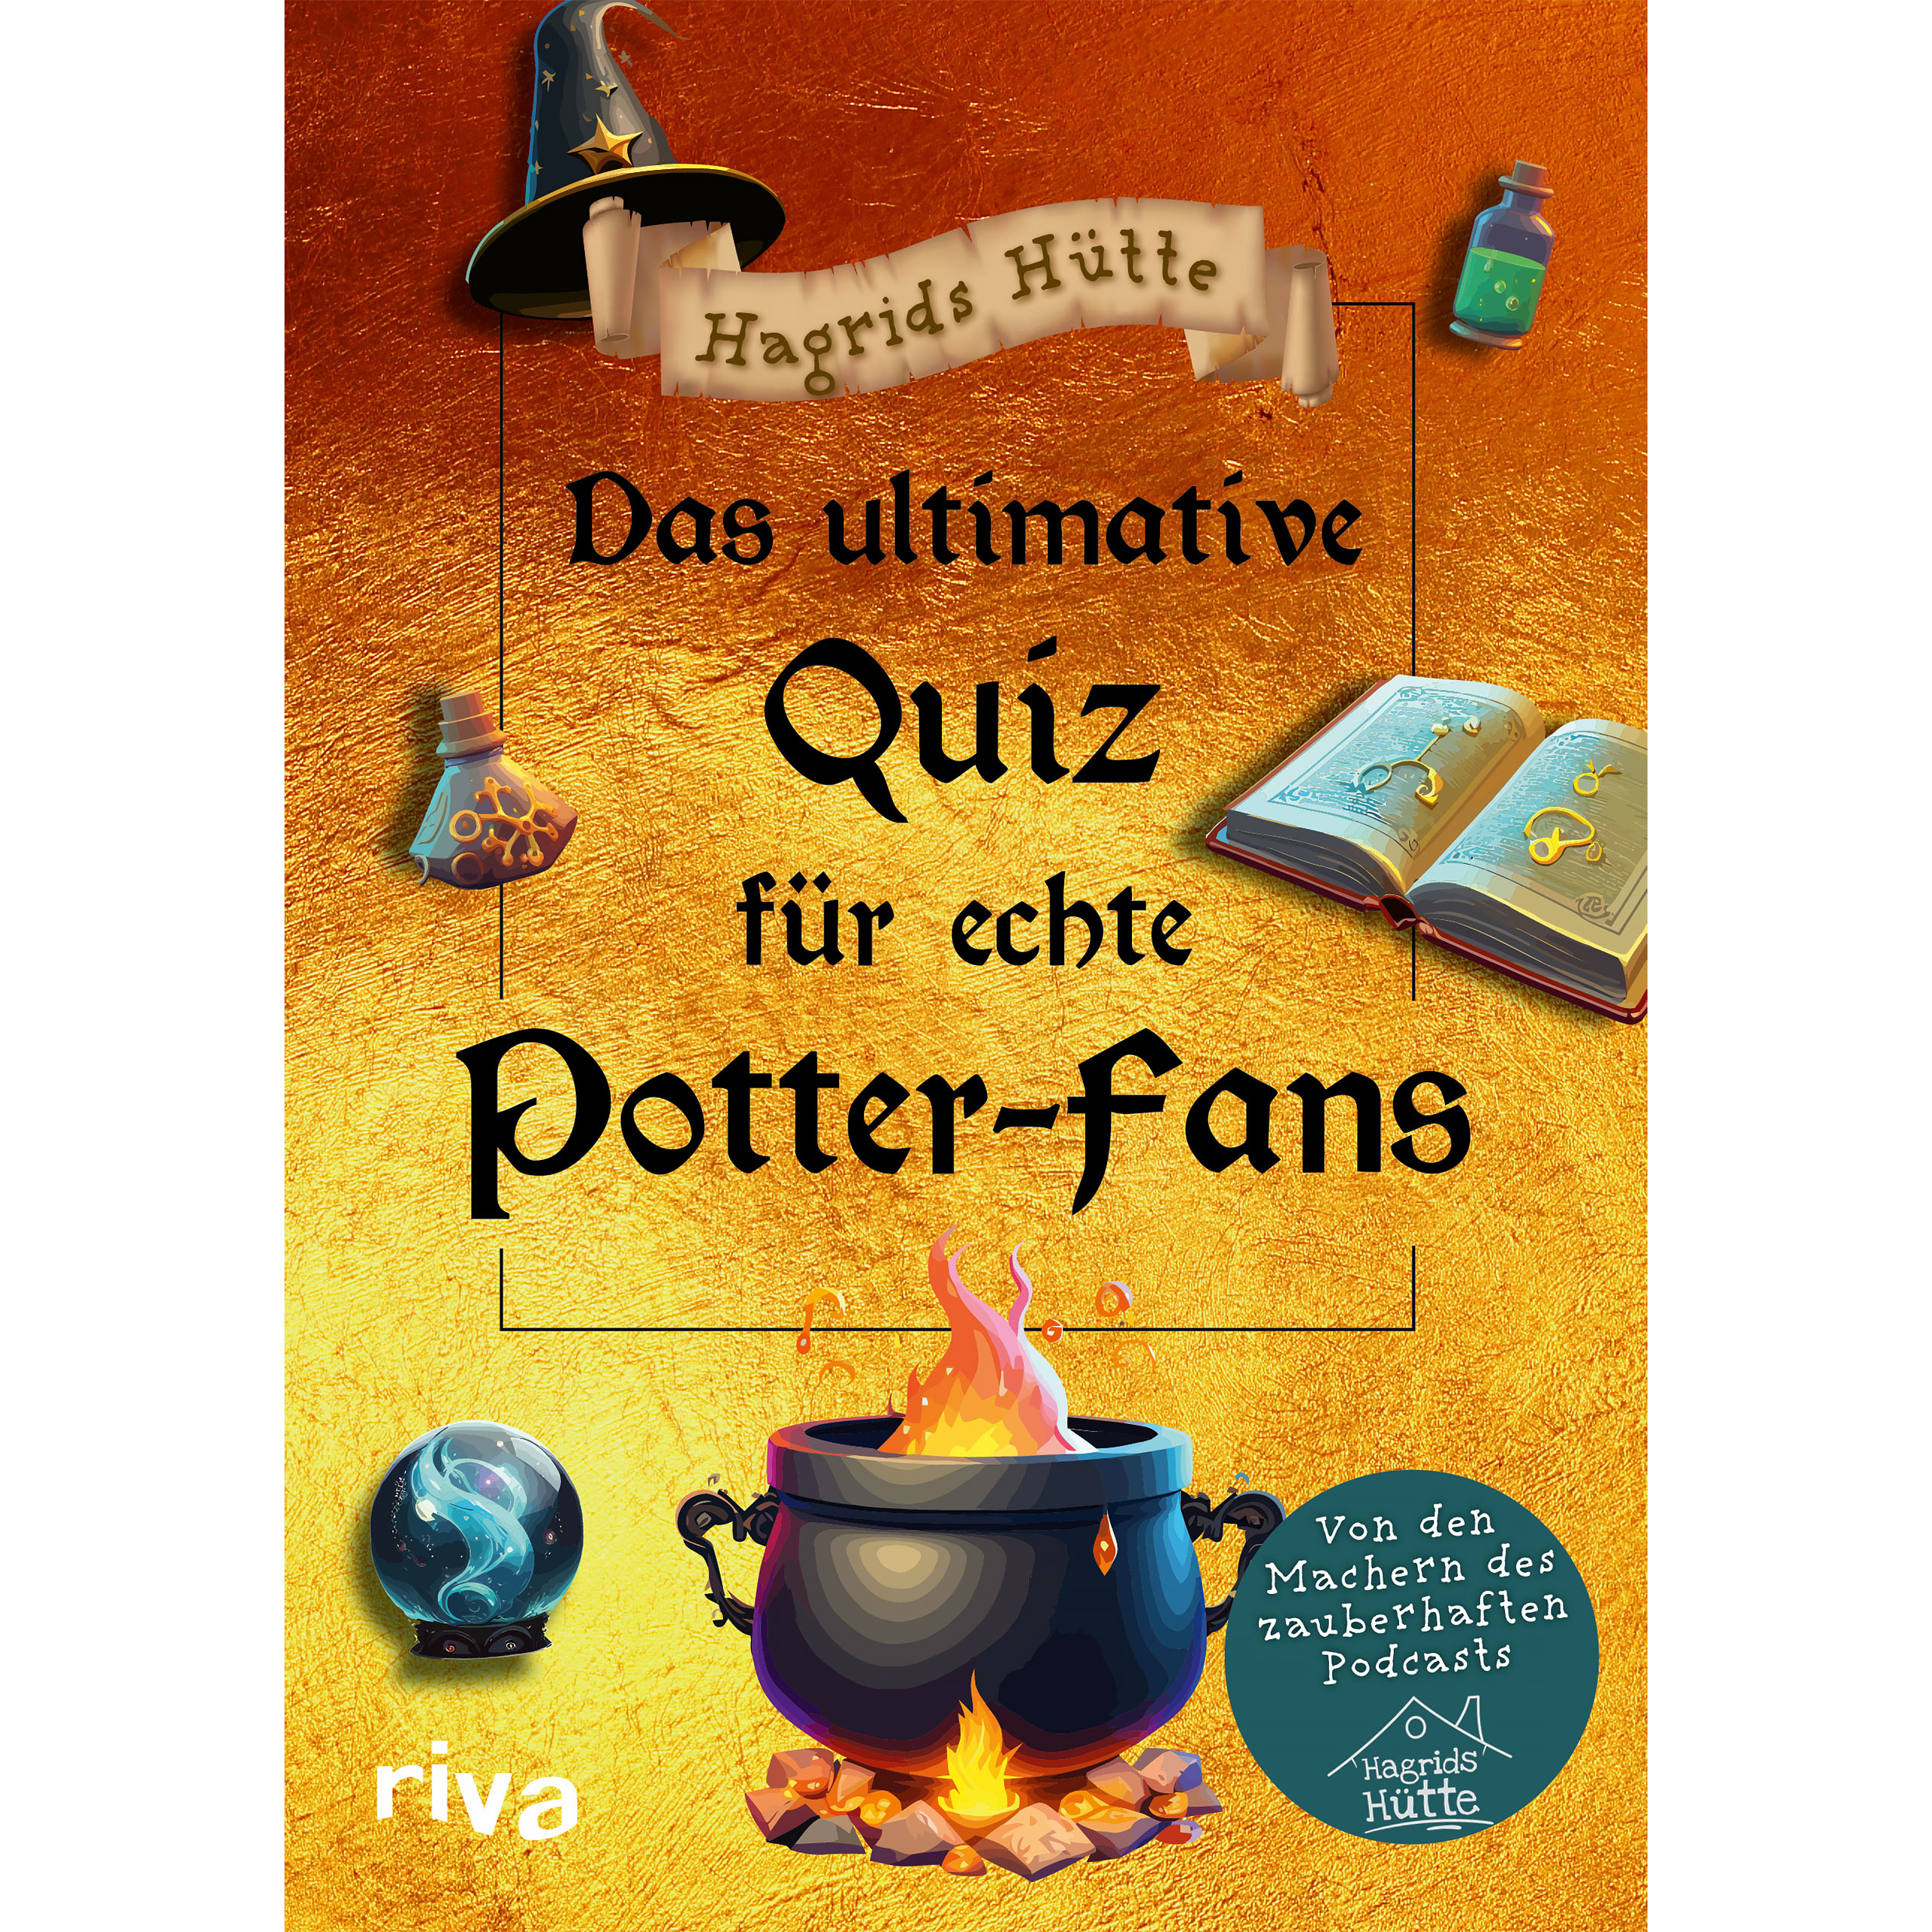 Le quiz ultime pour les vrais fans de Potter